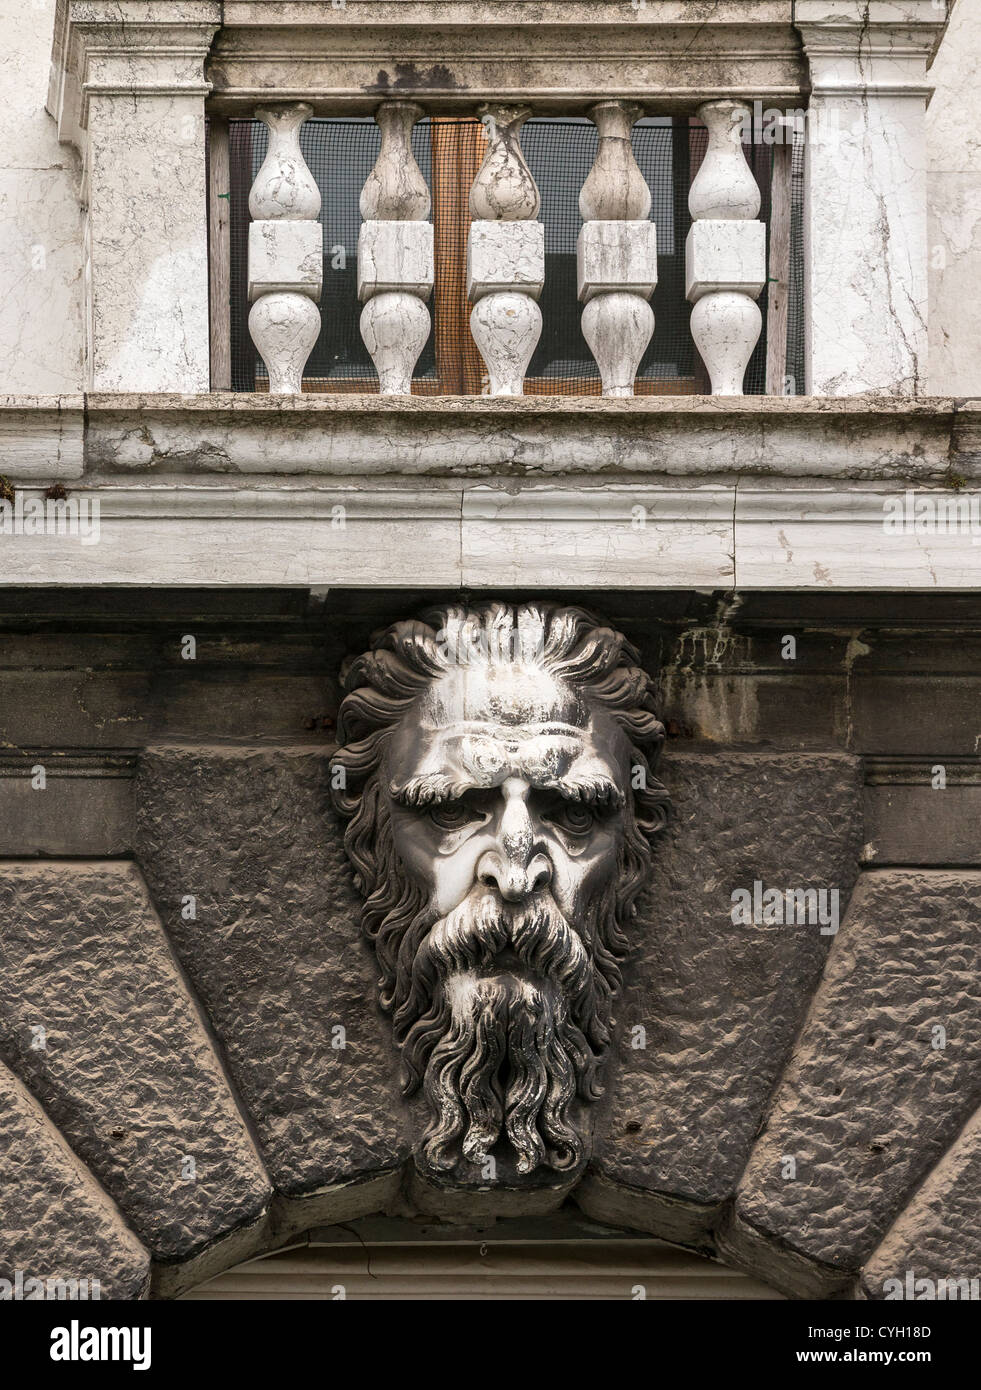 Detalle de un arco en Venecia, la piedra tallada en la forma de un anciano, y las demás dovelas almohadillada. Foto de stock